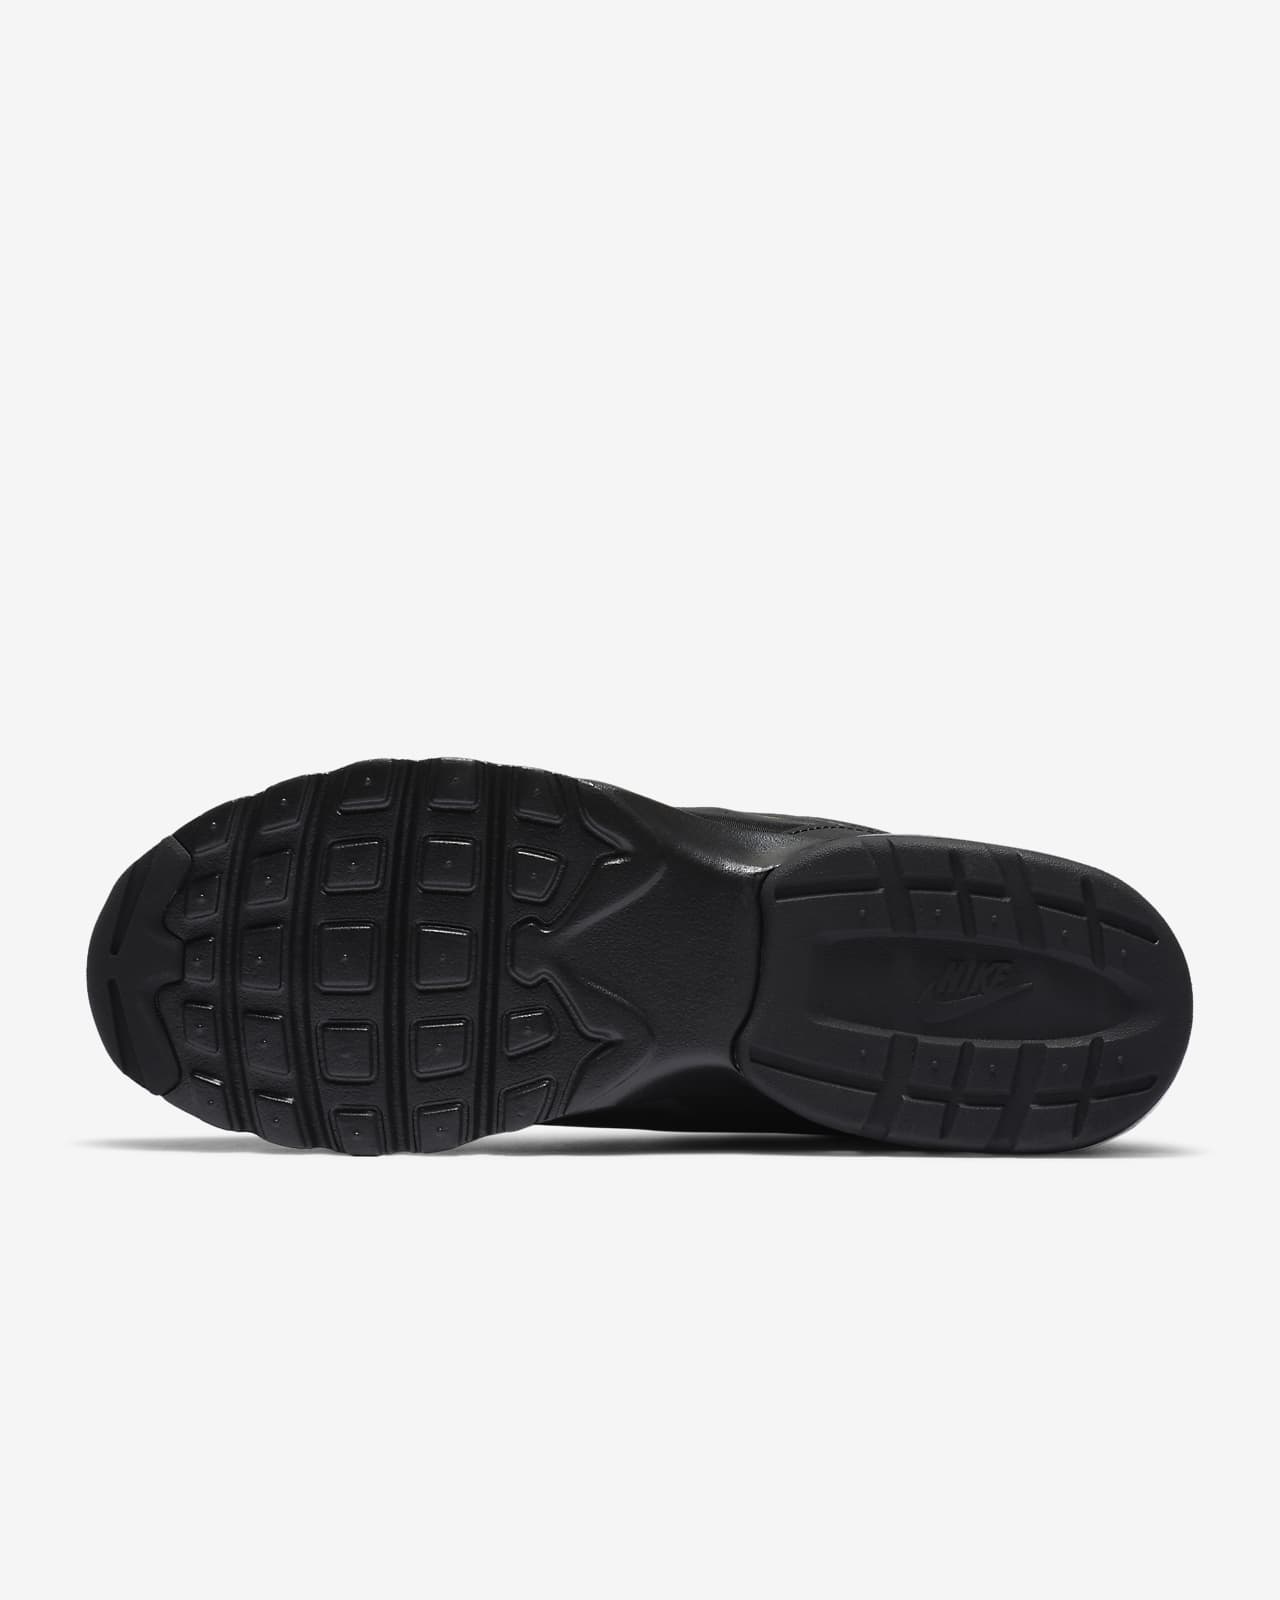 Nike Air Max VG-R Men's Shoes